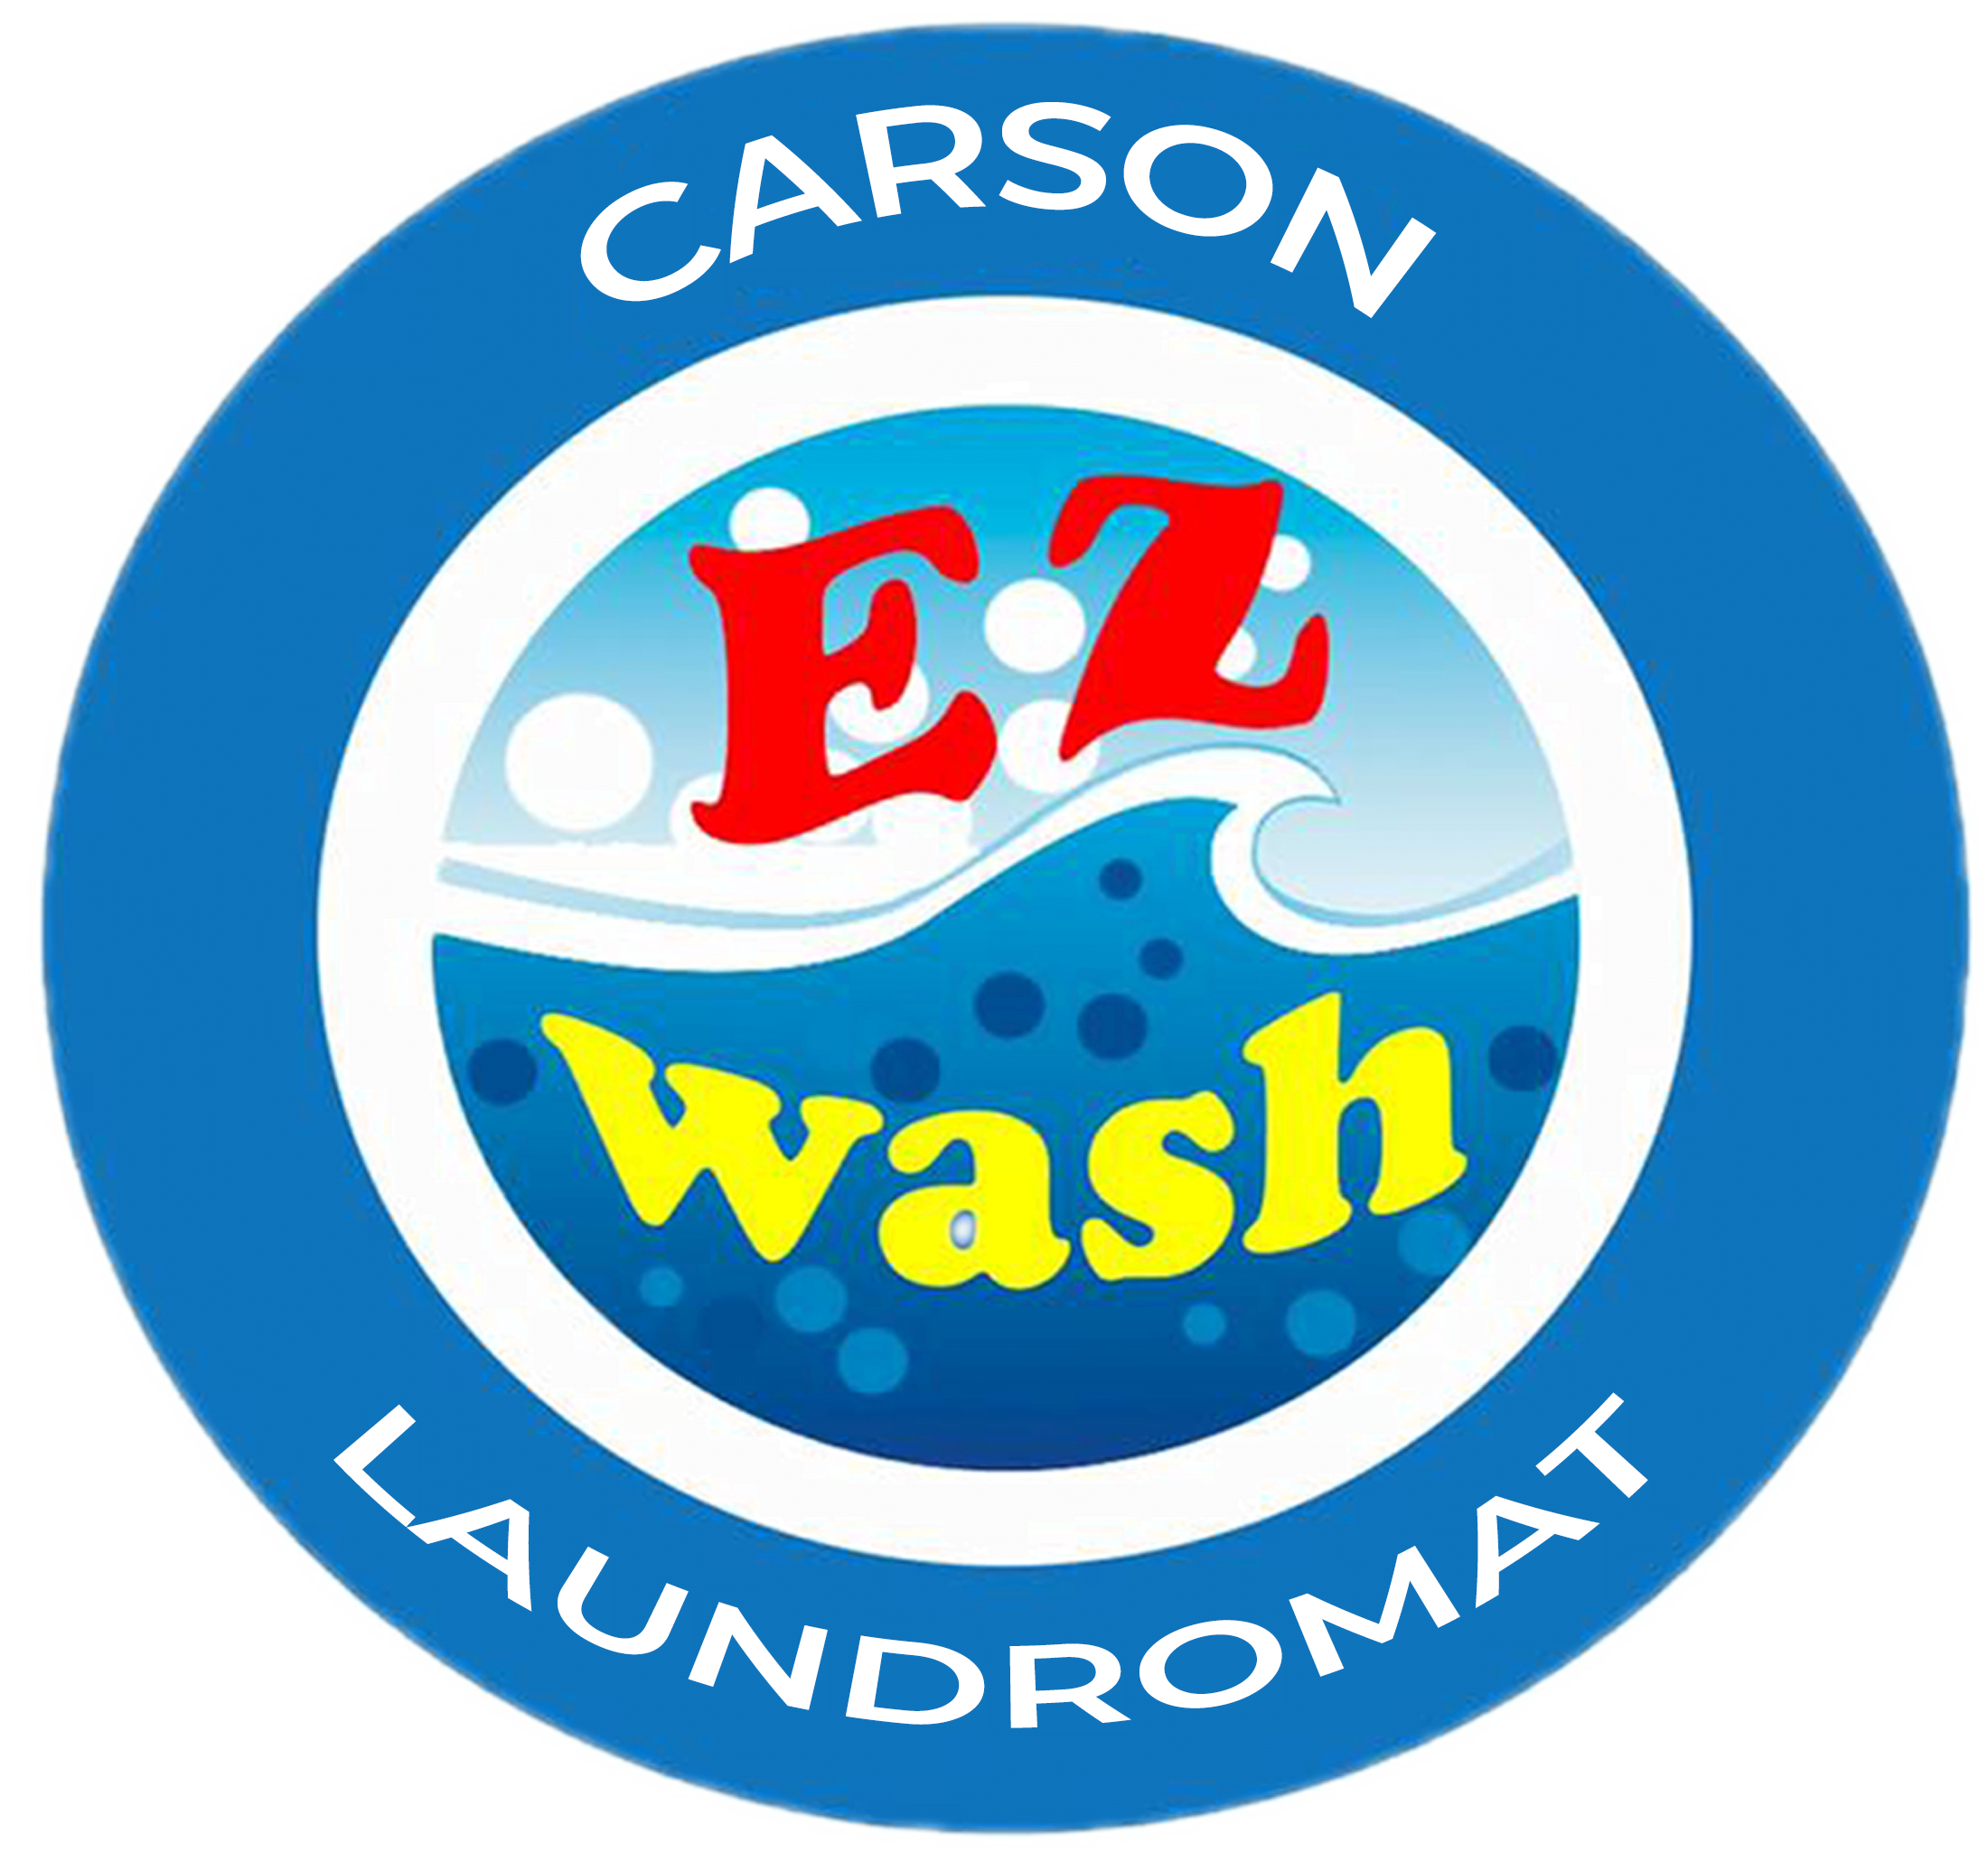 Teams Carson EZ Wash Laundromat